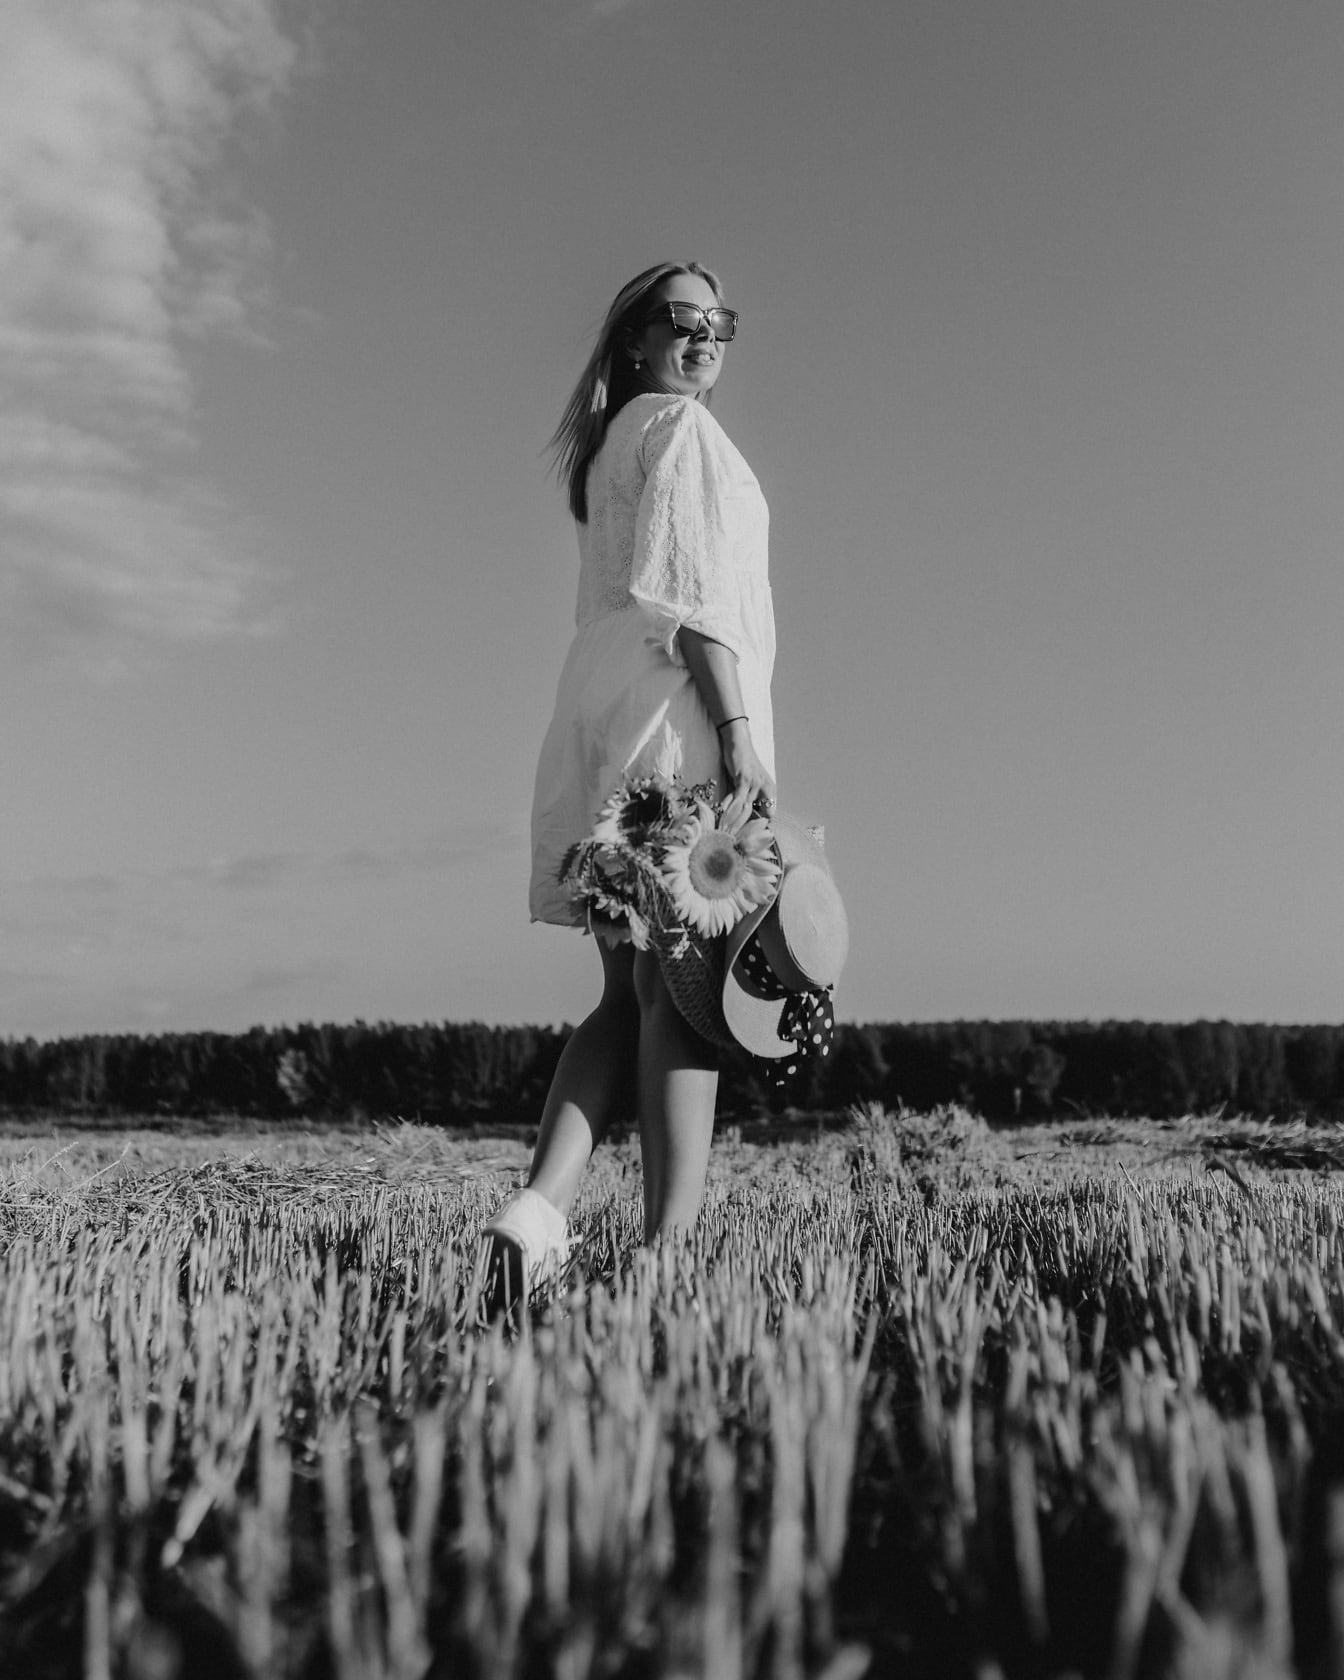 Chân dung đơn sắc của cô gái cao bồi trên cánh đồng lúa mì